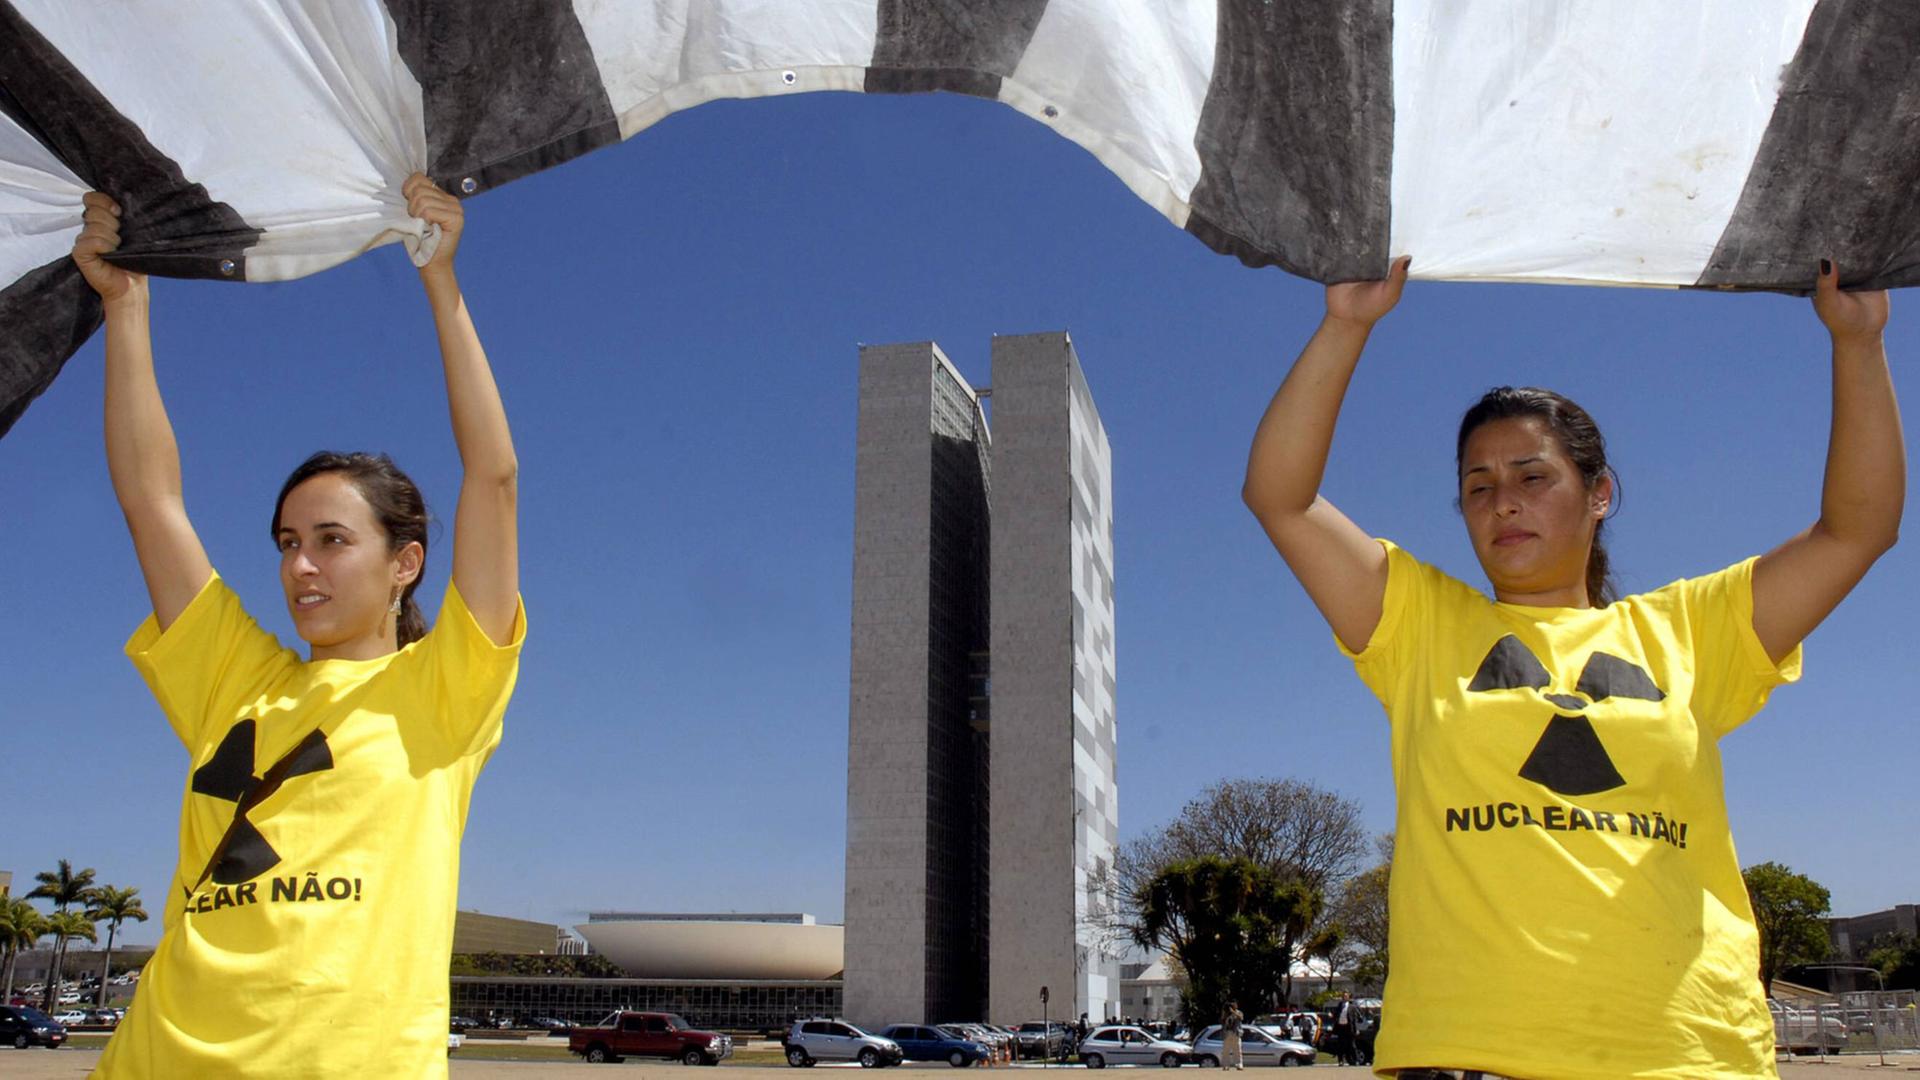 Zwei Demonstrantinnen bei einem Protest gegen den Bau des Atomkraftwerks Angra 3 in Brasilia